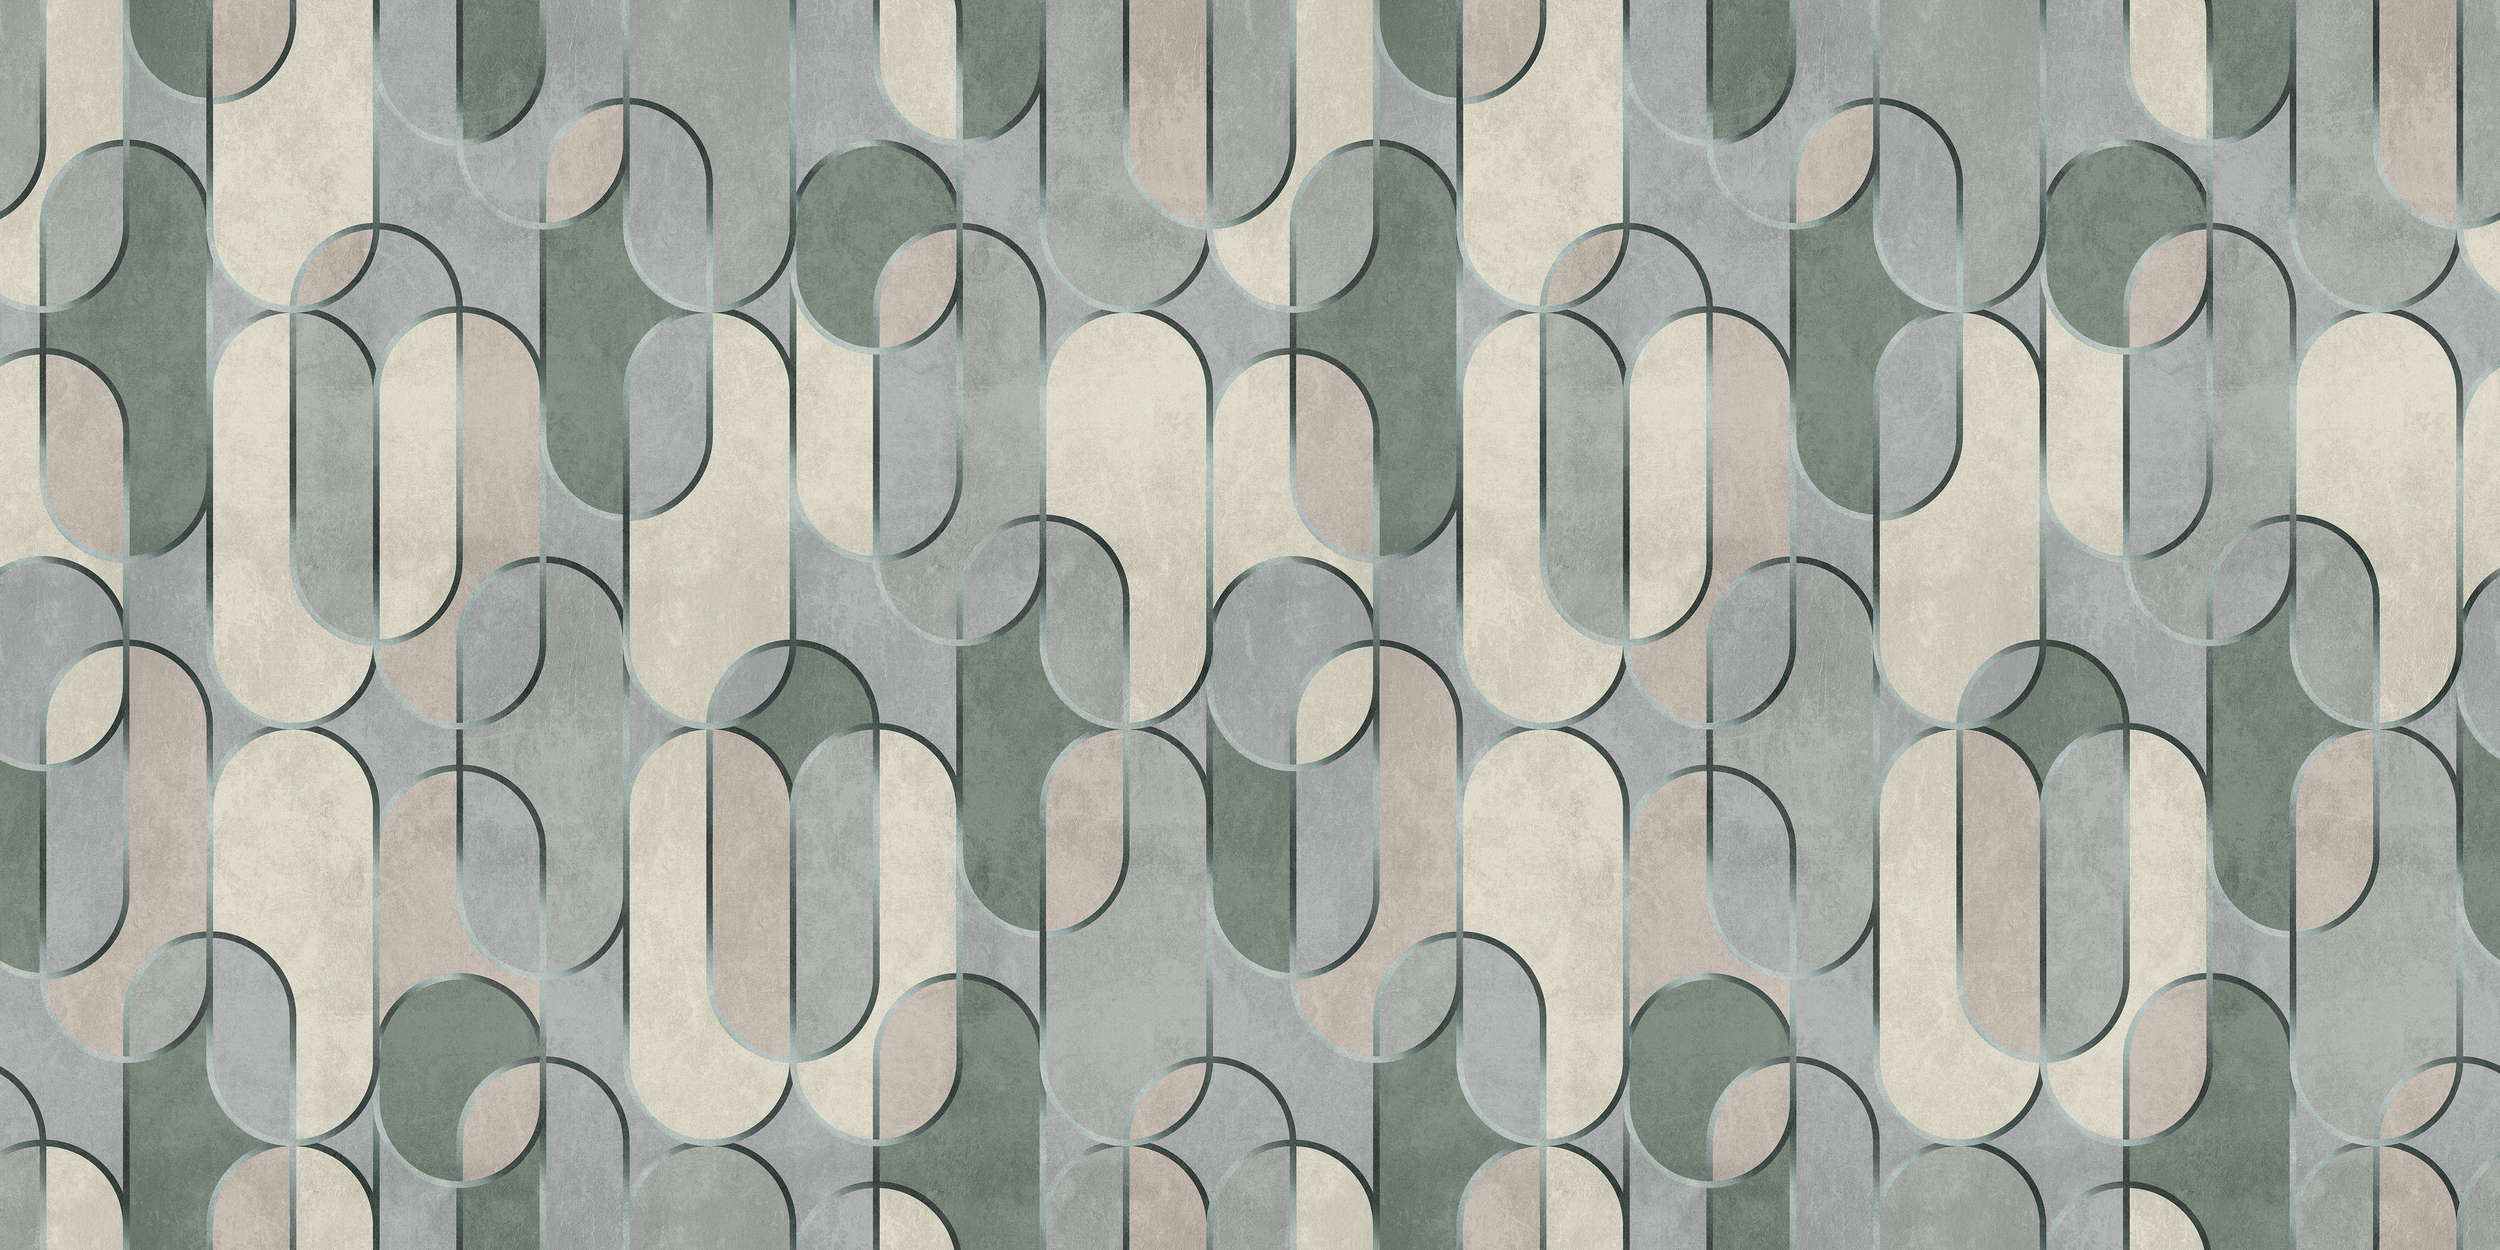             Ritz 2 - Papier peint style rétro, gris & vert avec détails métalliques
        